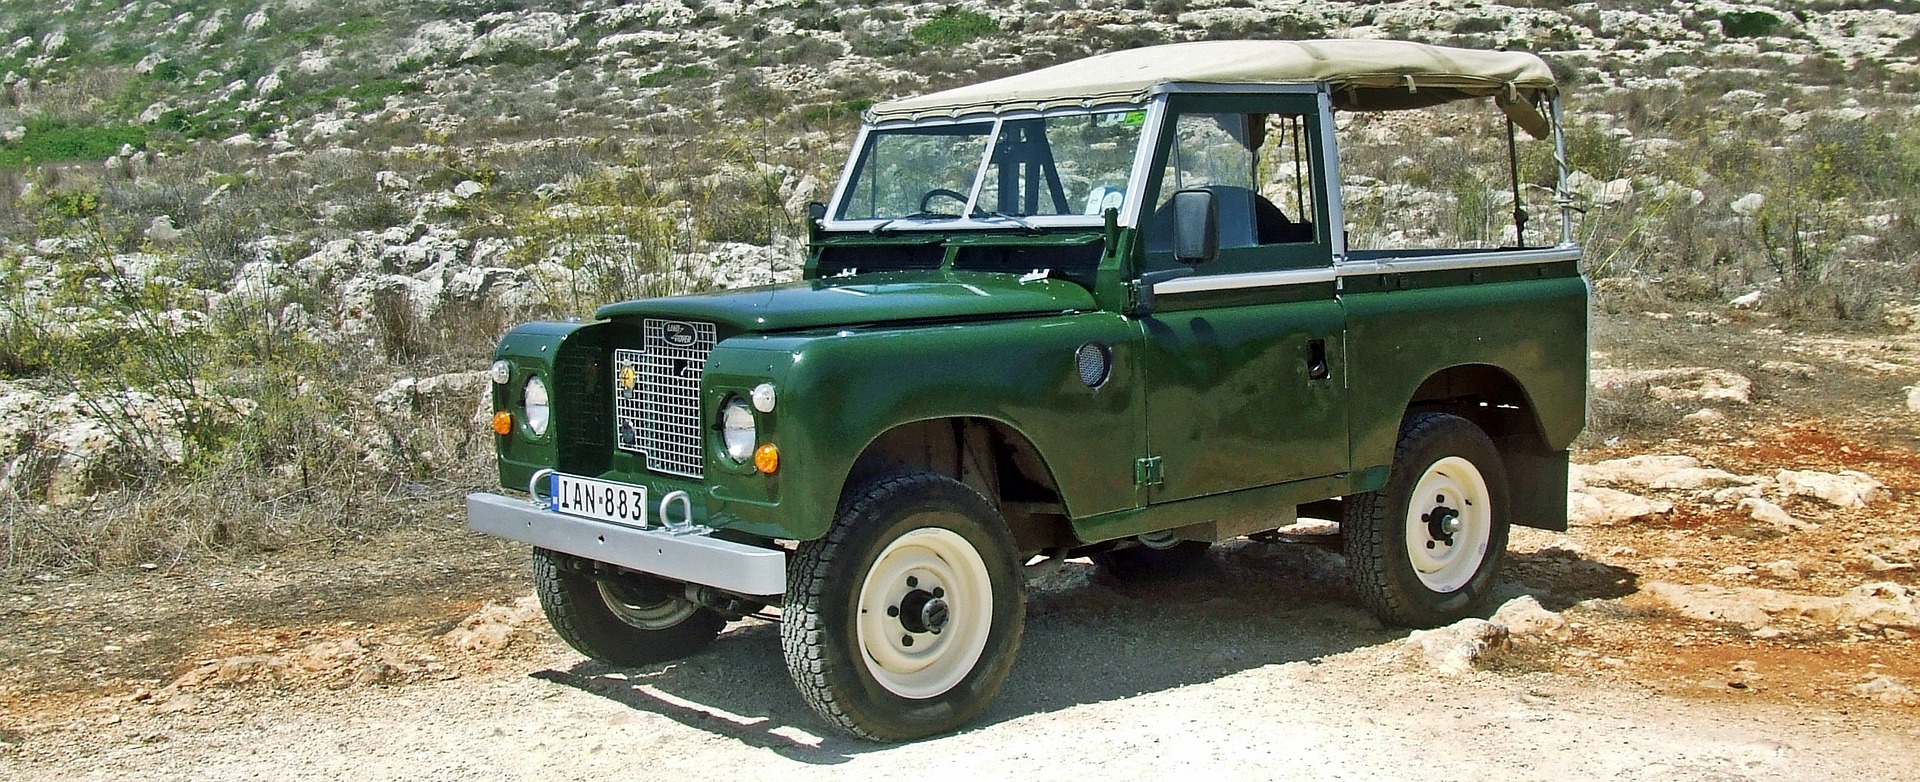 Un Land Rover vert foncé au milieu d'un paysage rocailleux et désertique